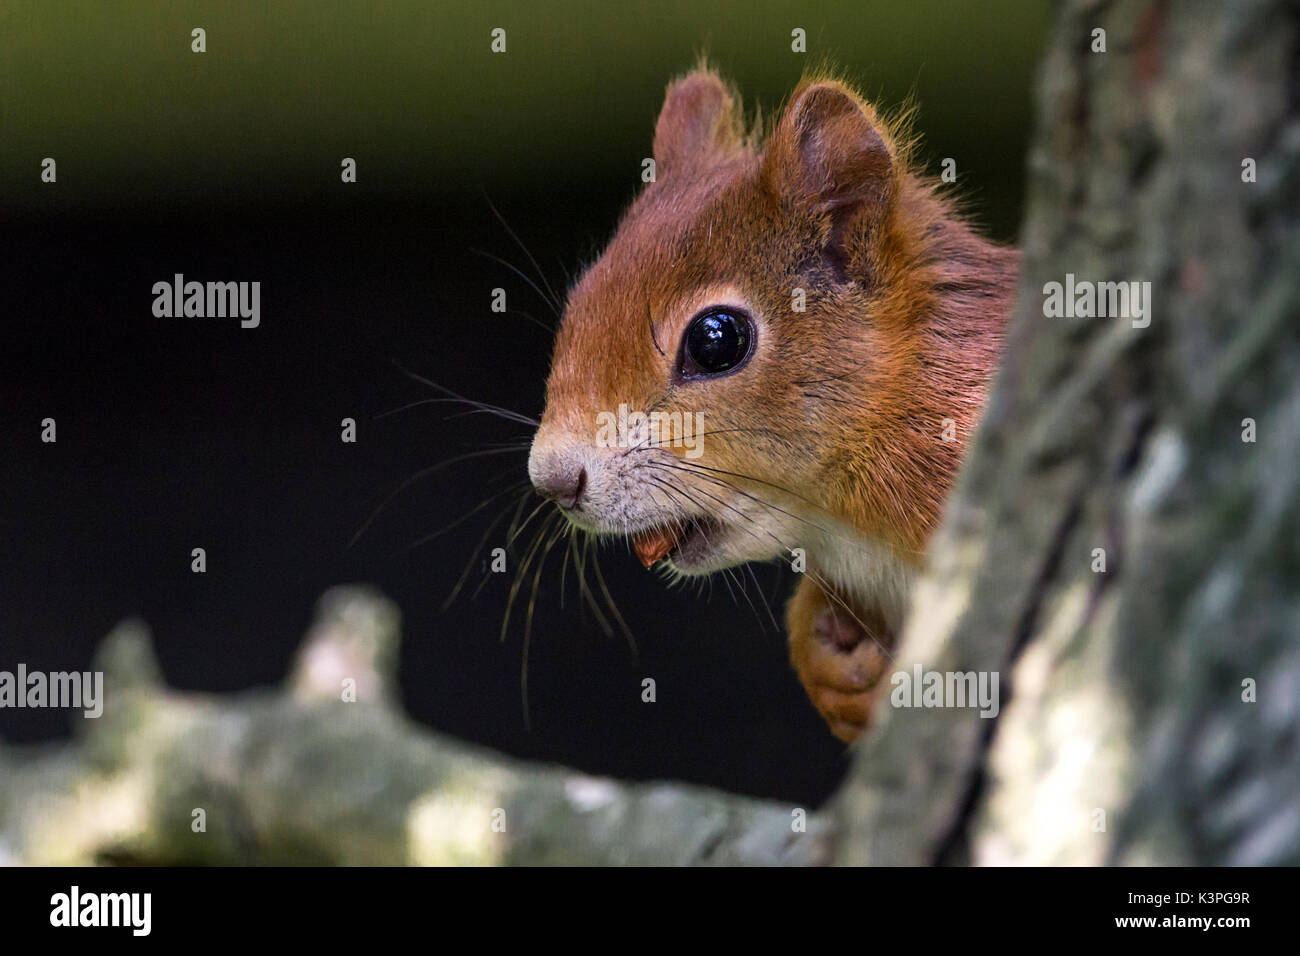 British red squirrel Sciurus vulgaris espèce autochtone en Grande-Bretagne et l'Irlande avec fourrure orange rouge. Grande queue touffue rouge plus pâle. A l'aide d'un écrou dans la bouche. Banque D'Images